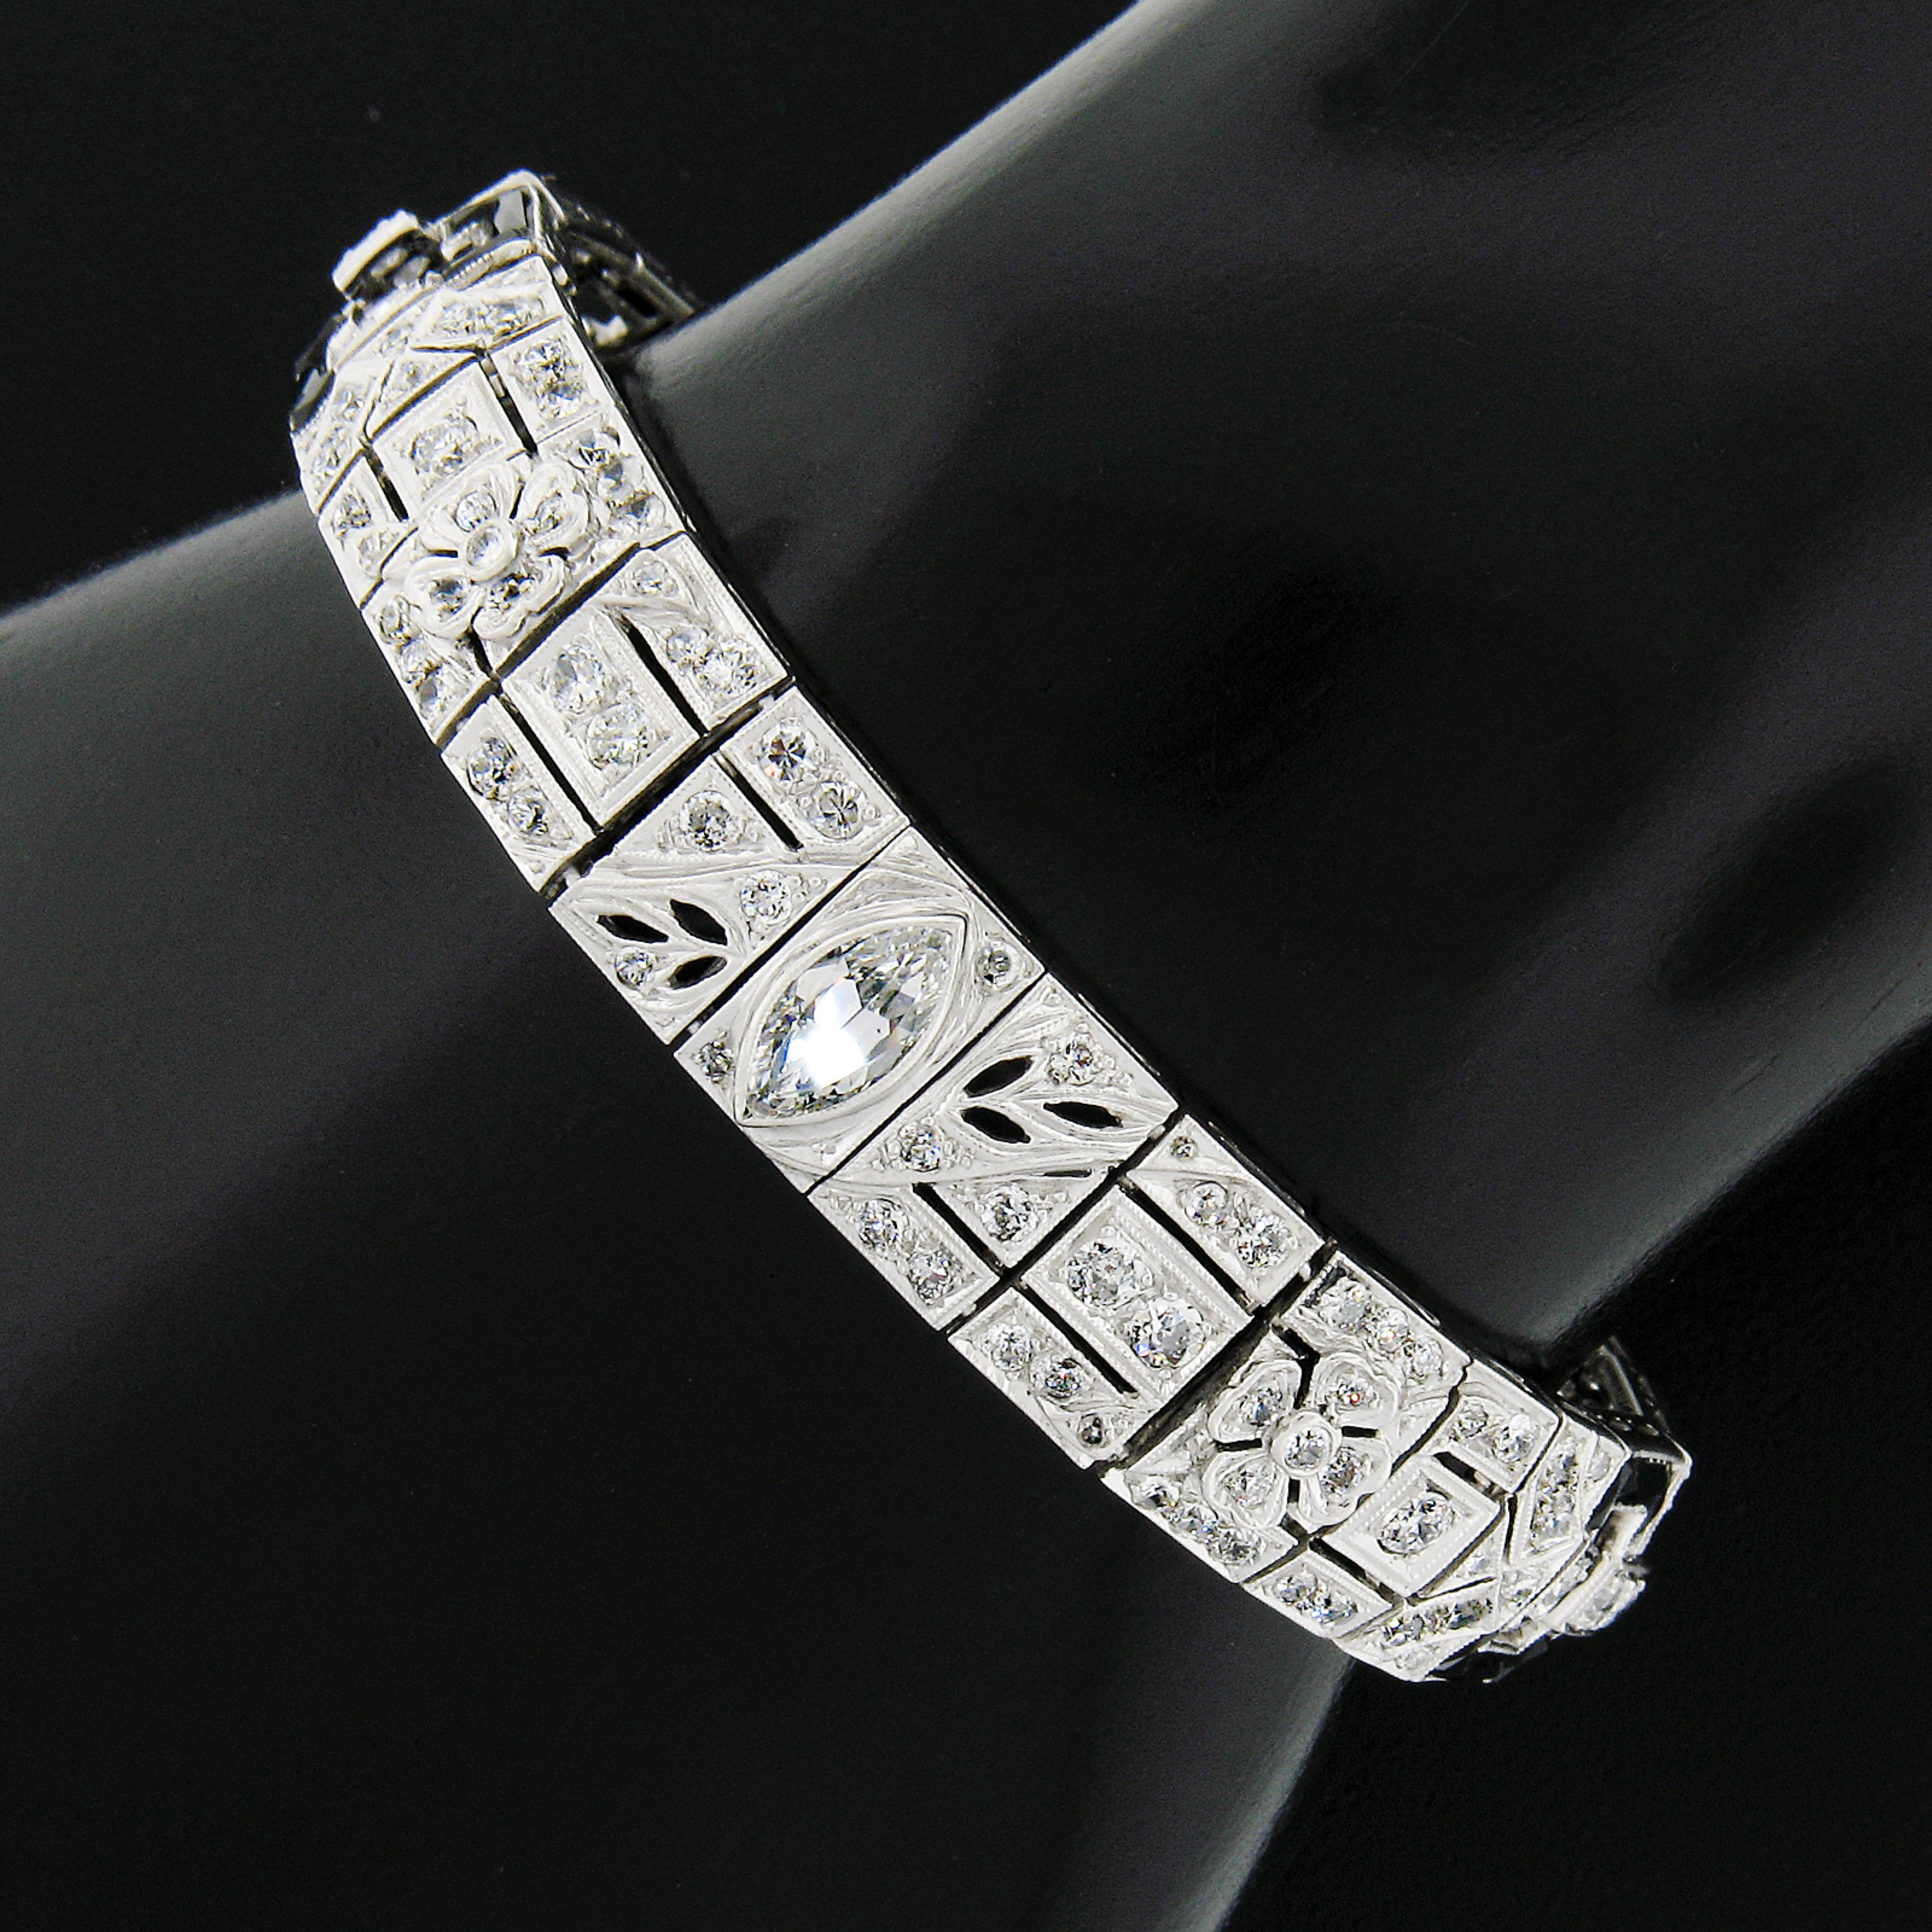 Nous avons ici un bracelet d'époque Art déco absolument incroyable, TOUT A FAIT ORIGINAL, réalisé en platine massif et présentant des maillons rectangulaires et carrés entièrement et élégamment incrustés de diamants de taille ancienne et d'onyx noir